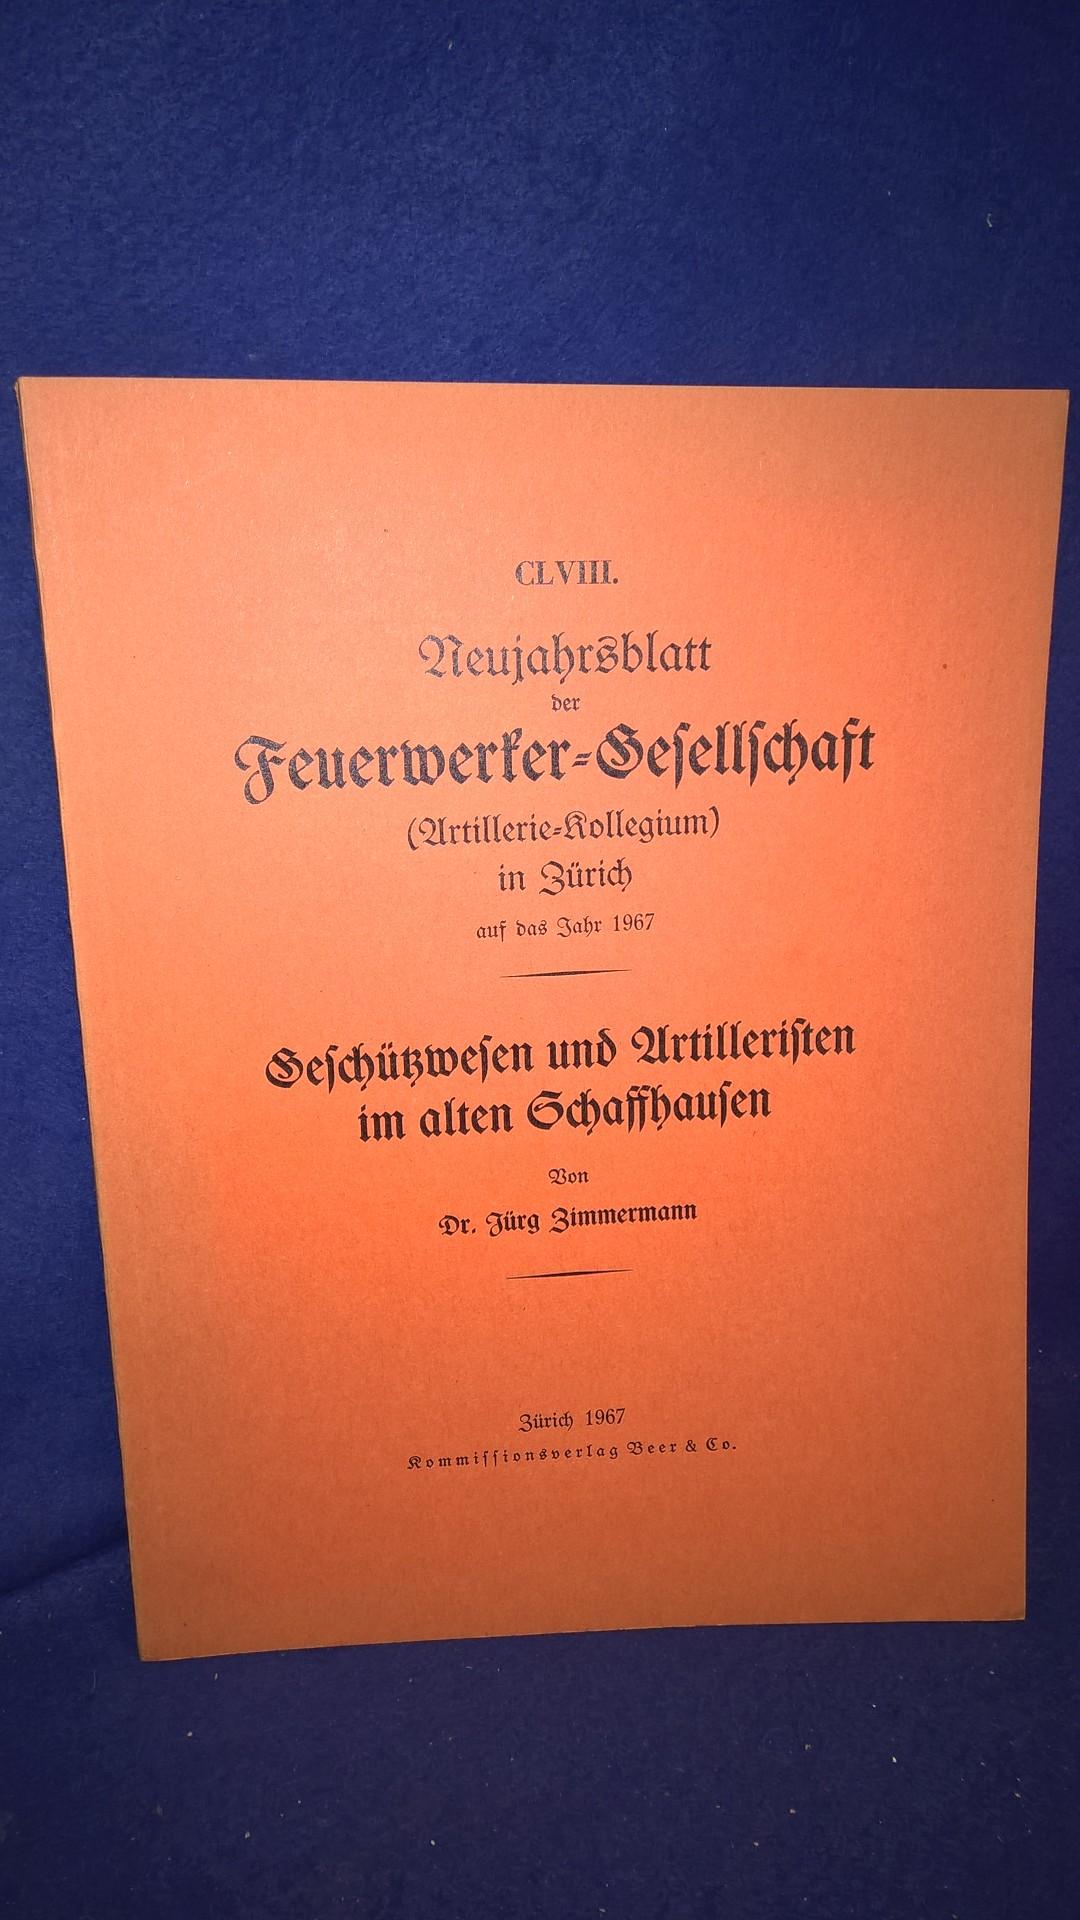 Geschützwesen und Artilleristen im alten Schaffhausen. Aus der Reihe: Neujahrsblatt der Feuerwerker-Gesellschaft ( Artillerie-Kollegium ) in Zürich auf das Jahr 1967.